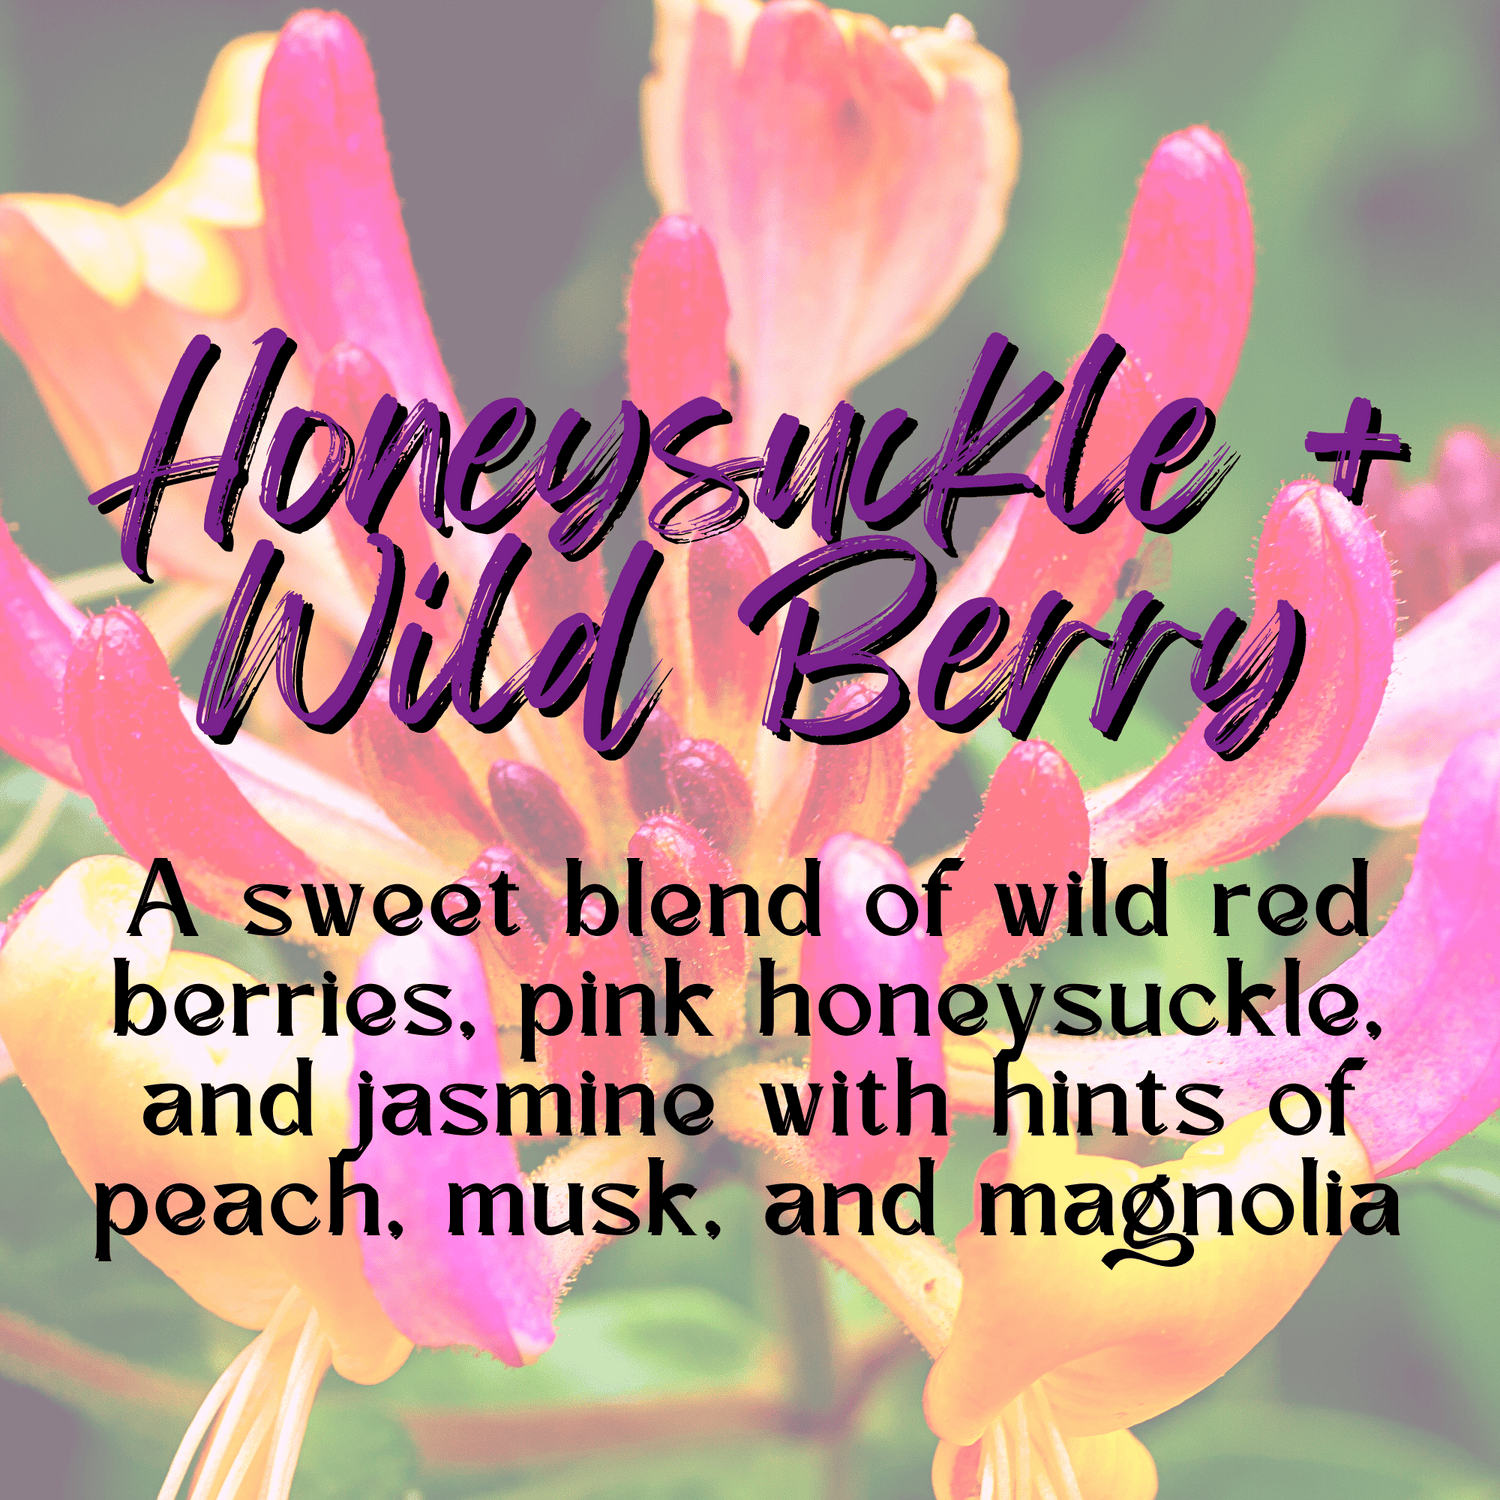 Honeysuckle + Wild Berry